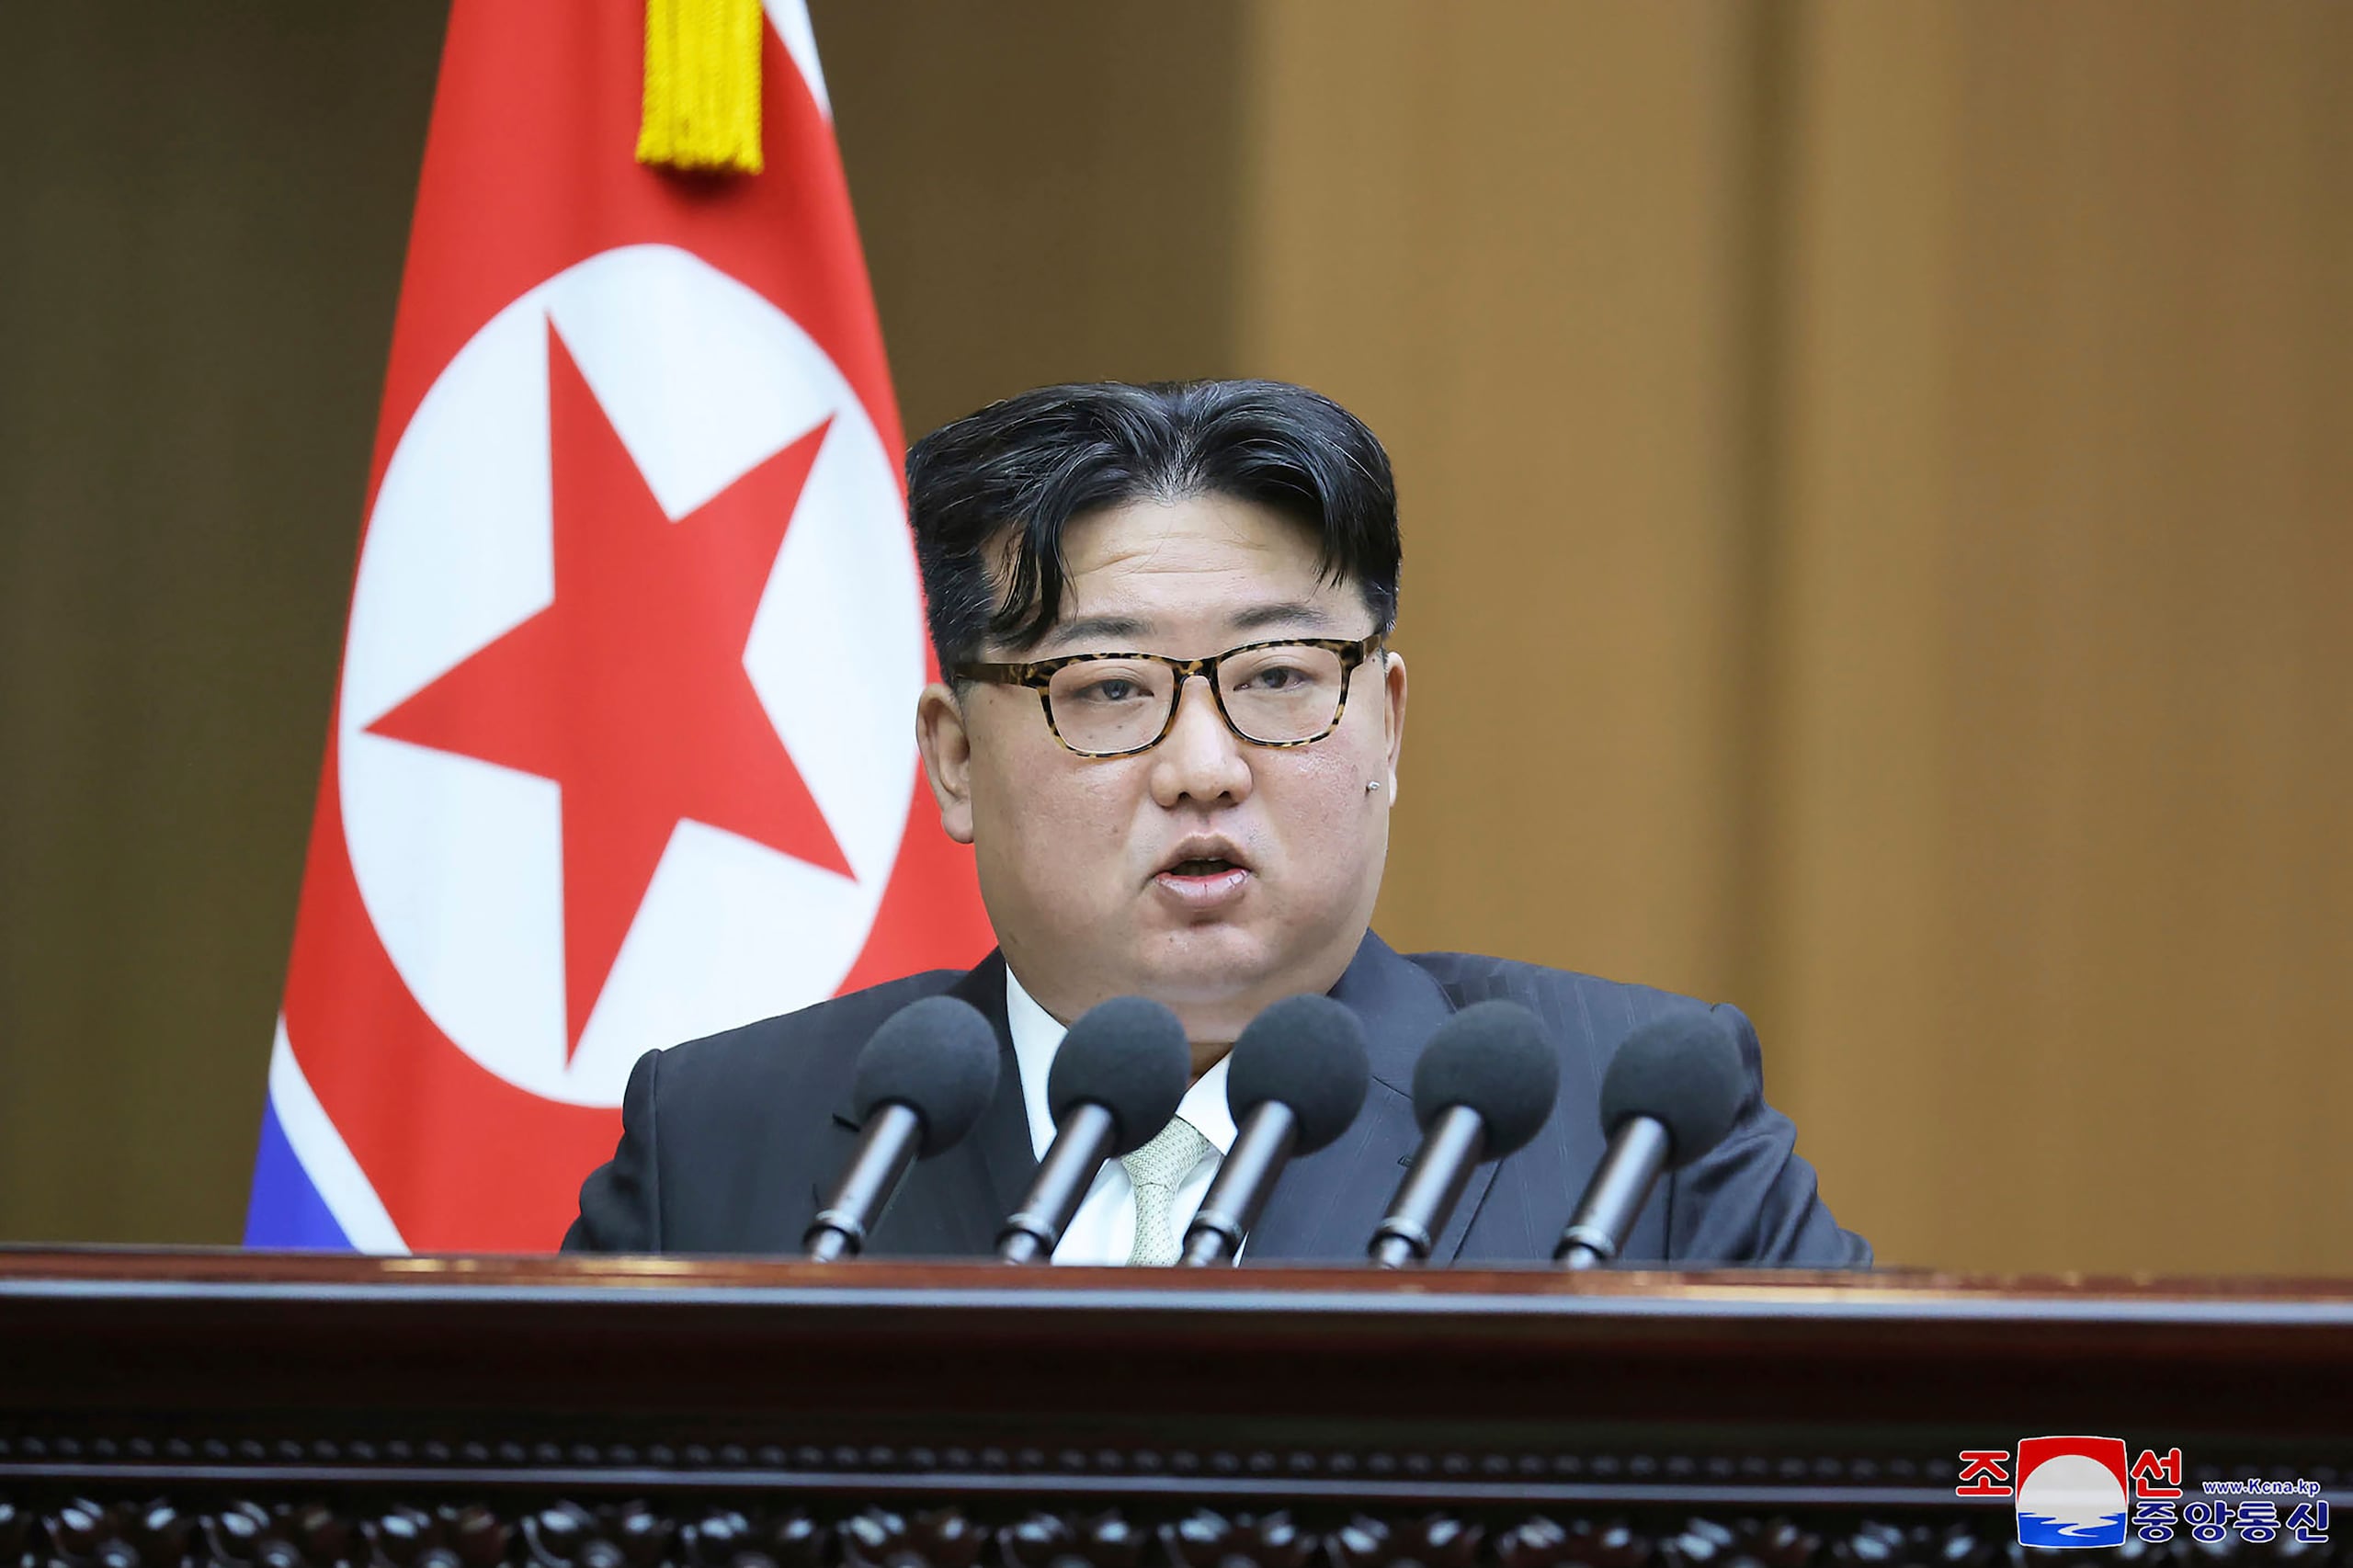 El líder de Corea del Norte, Kim Jong Un, prohibió el K-pop para proteger a los ciudadanos de la “influencia maligna” de la cultura occidental.